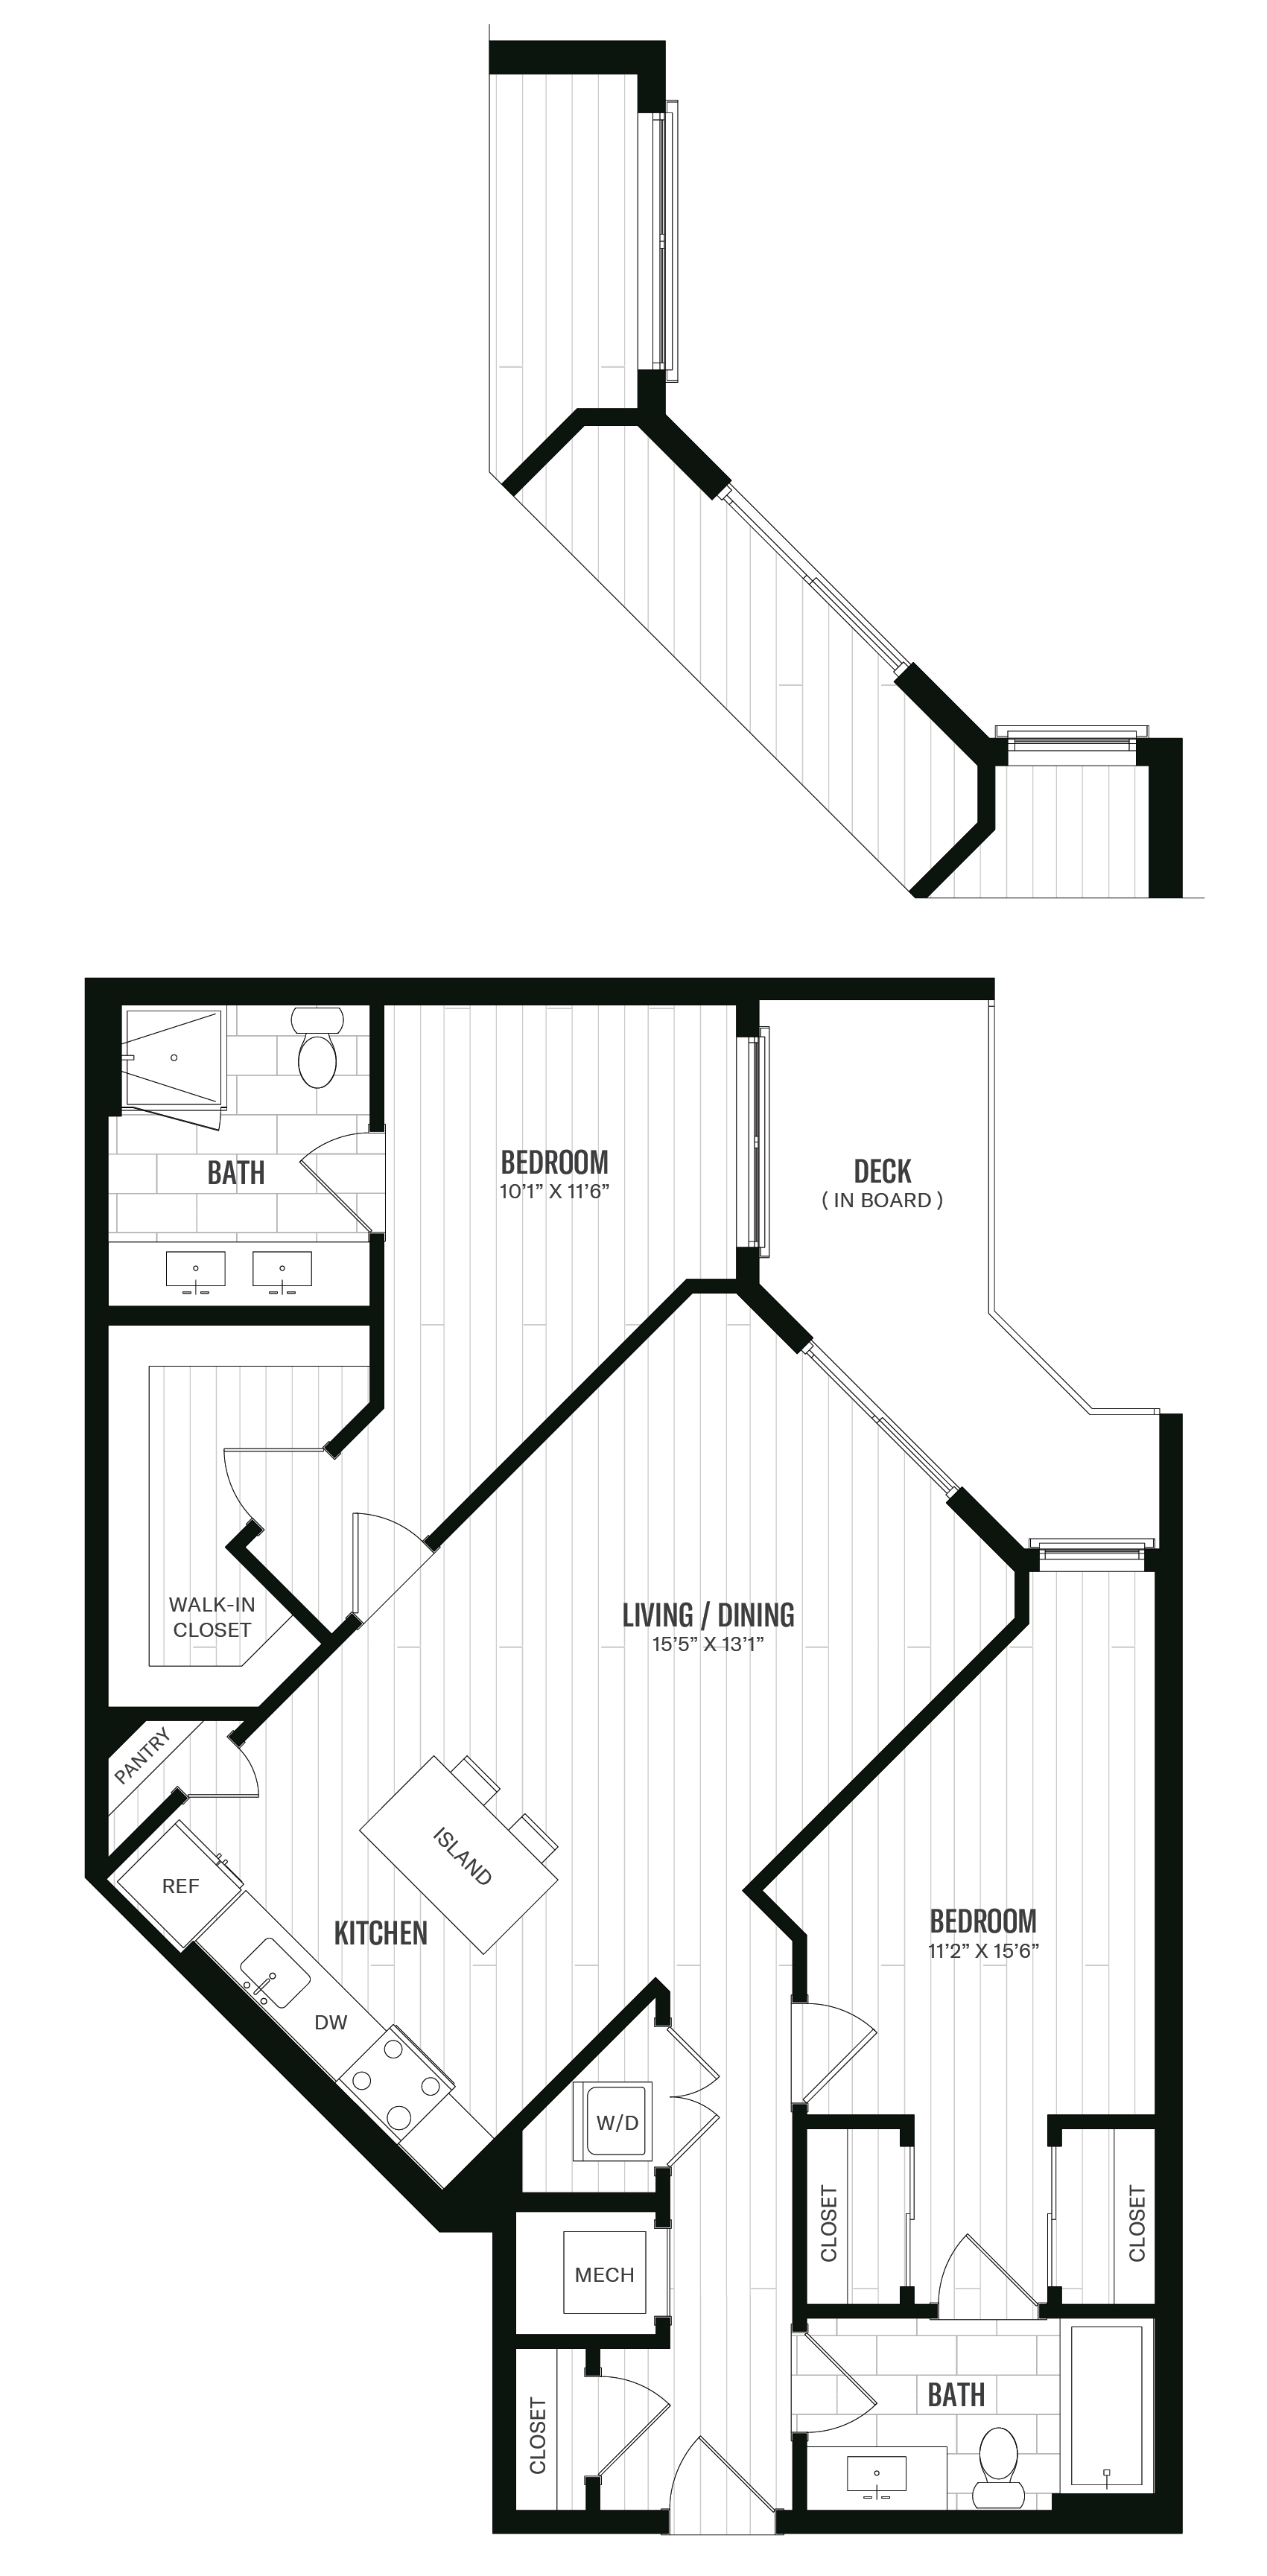 Floorplan image of unit 551